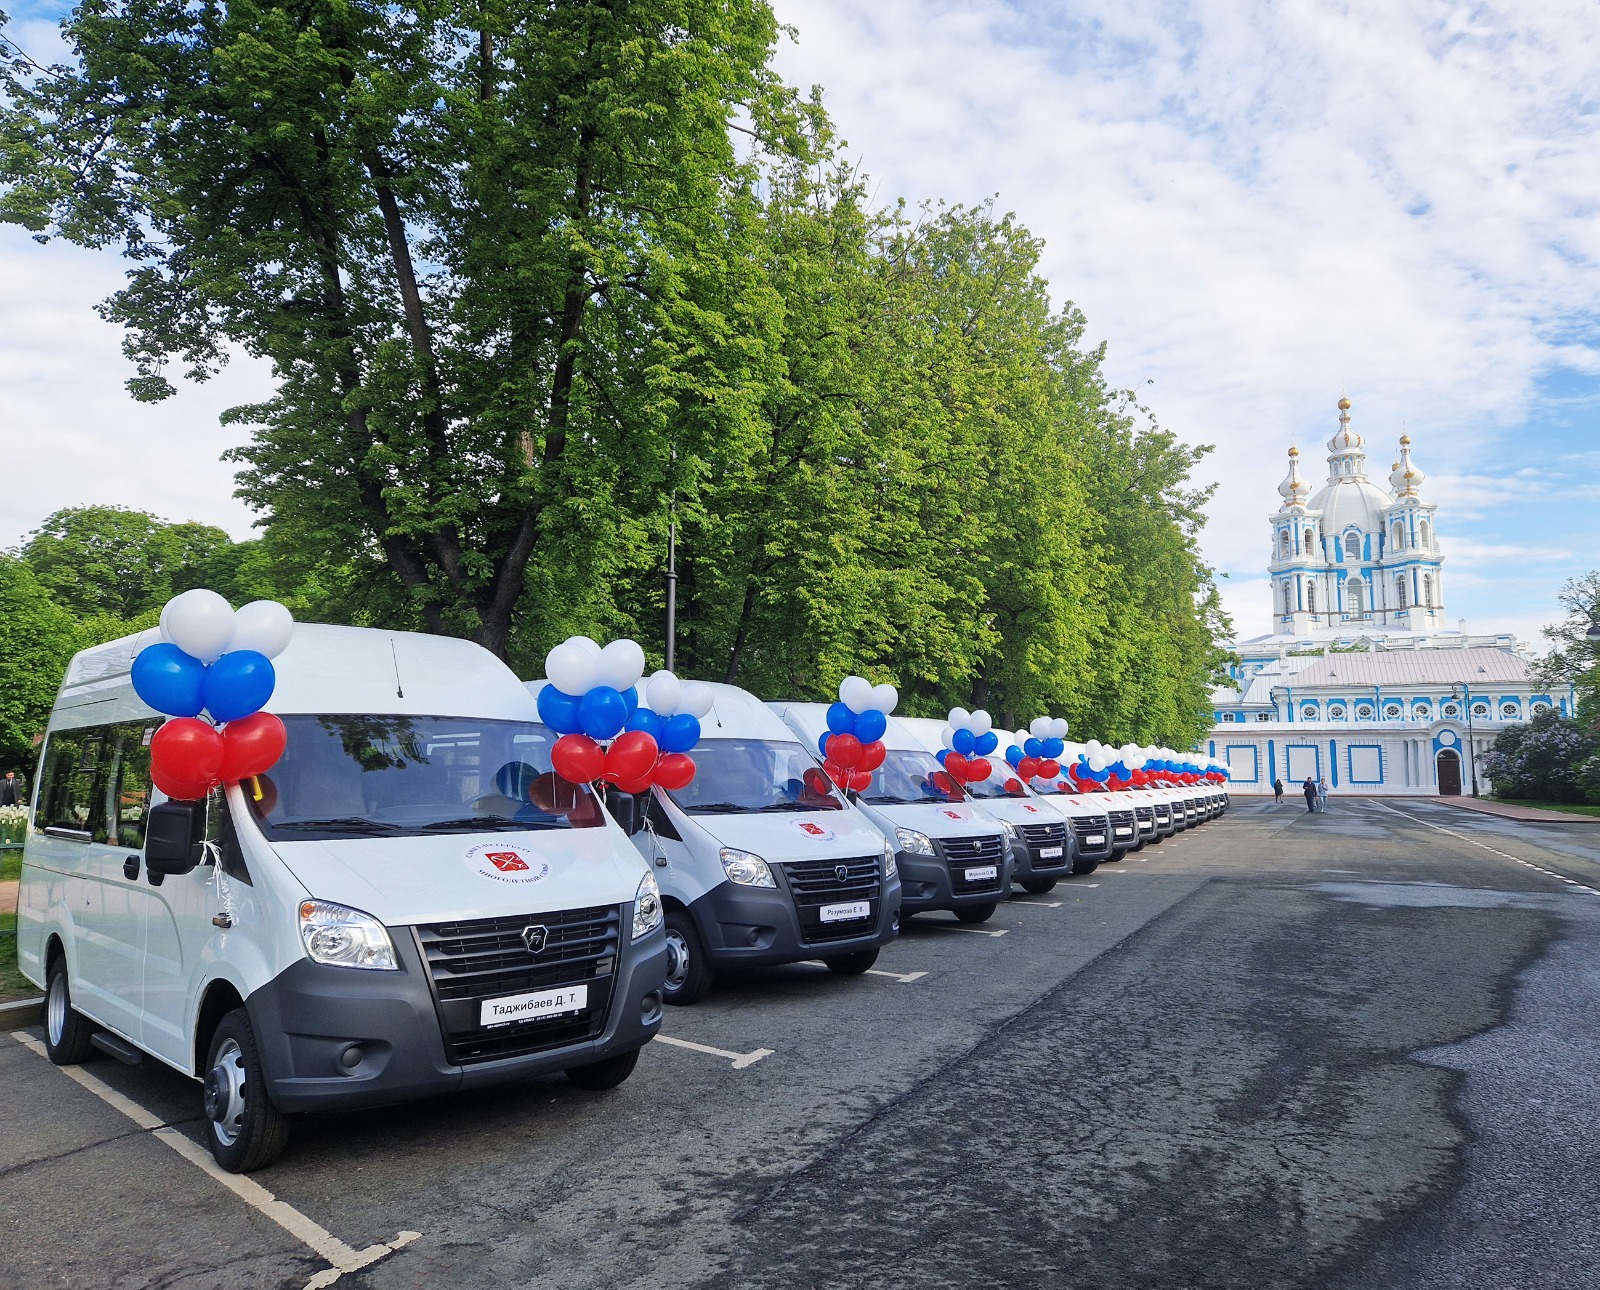 Губернатор Санкт-Петербурга вручил микроавтобусы ГАЗ многодетным семьям 31 мая в Смольном